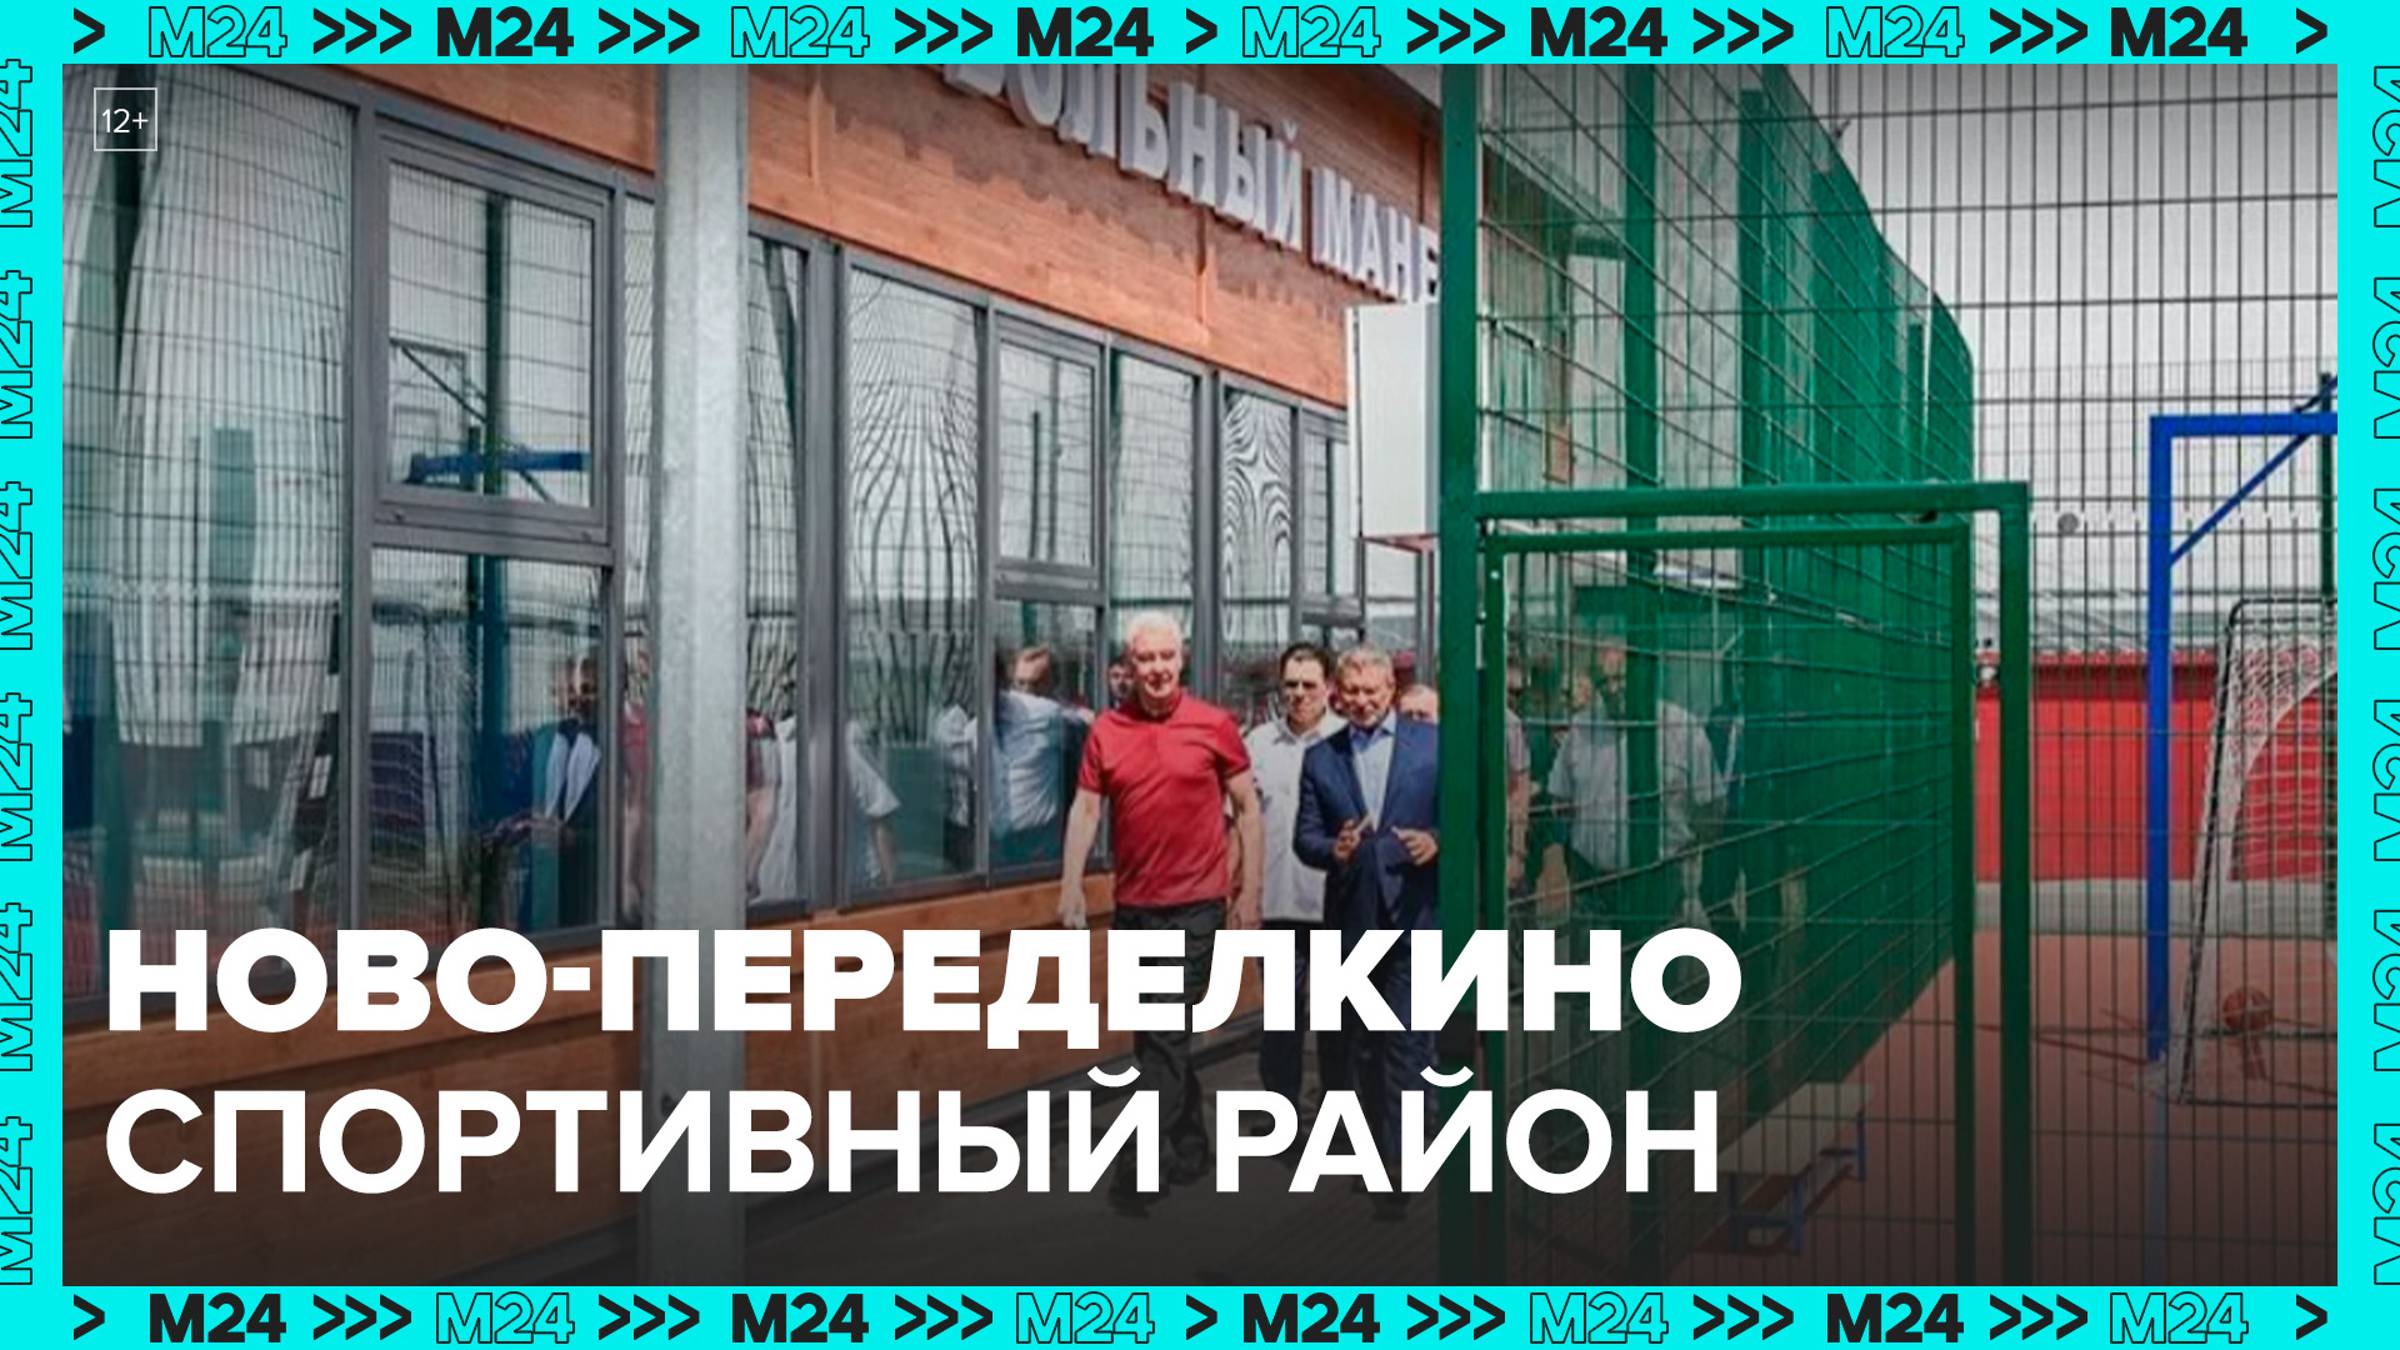 В Ново-Переделкине открыли футбольный манеж в СК «Арктика» — Москва 24